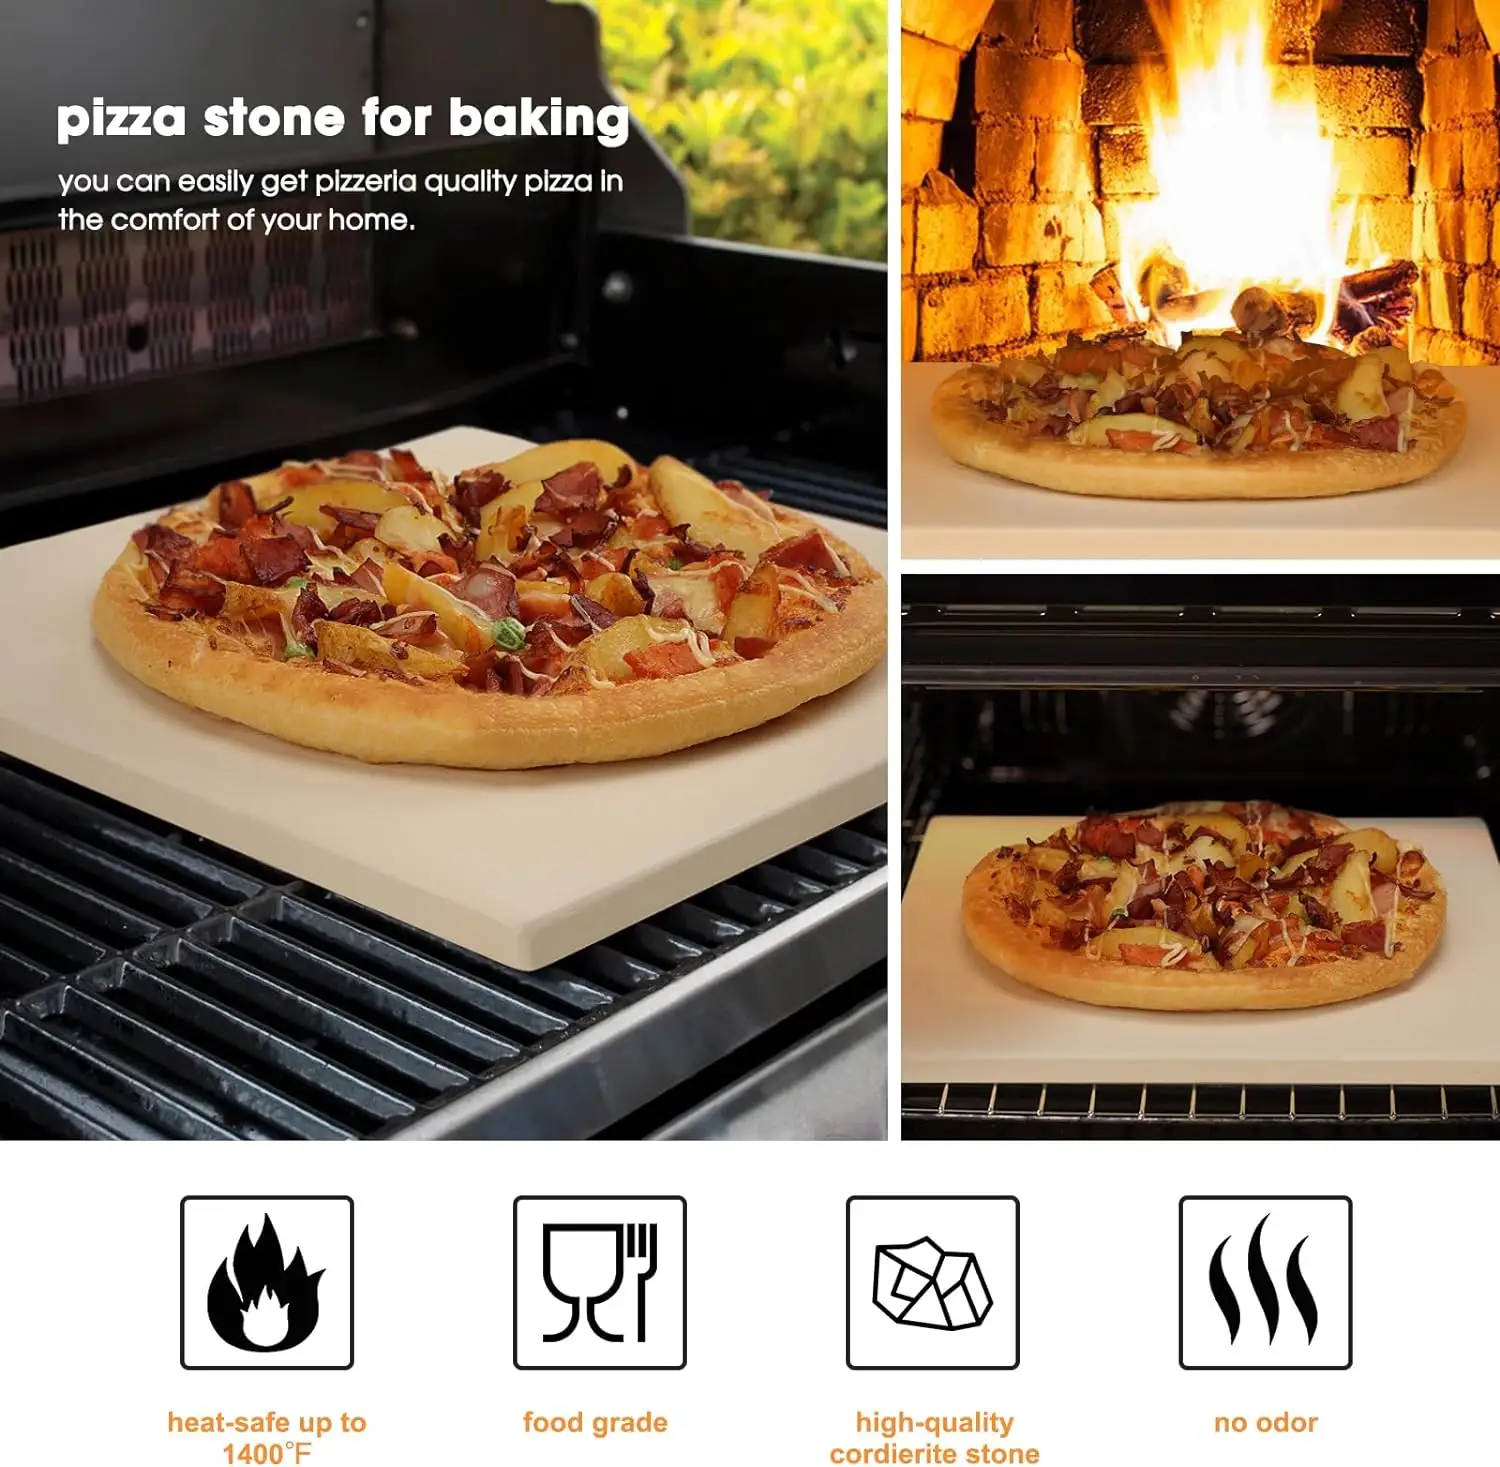 Pedra cerâmica quadrada resistente ao calor para pizza, pedra retangular refratária para forno de pizza